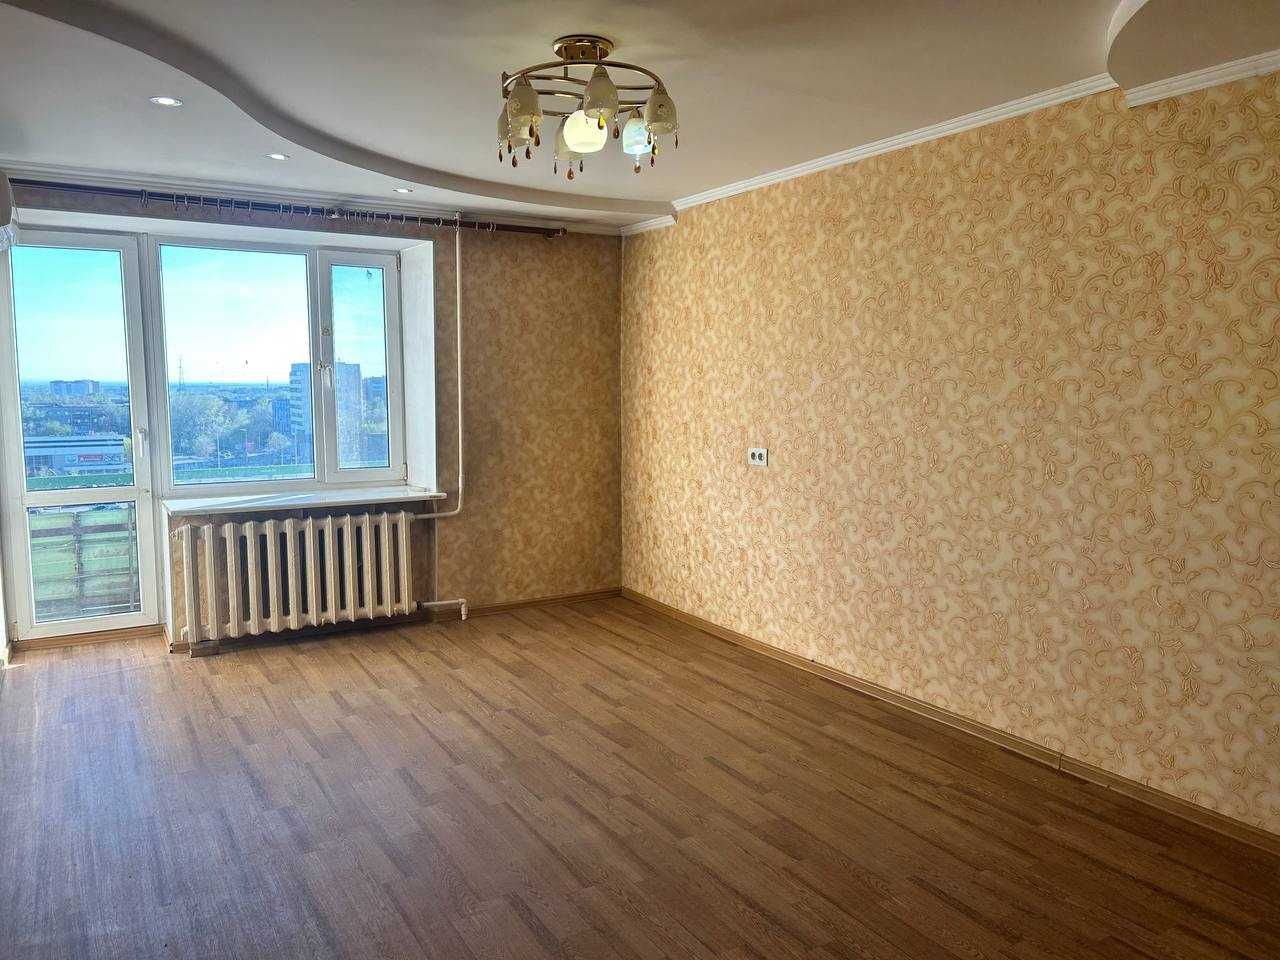 Продам 2х комнатную квартиру в доме "Гармошка"